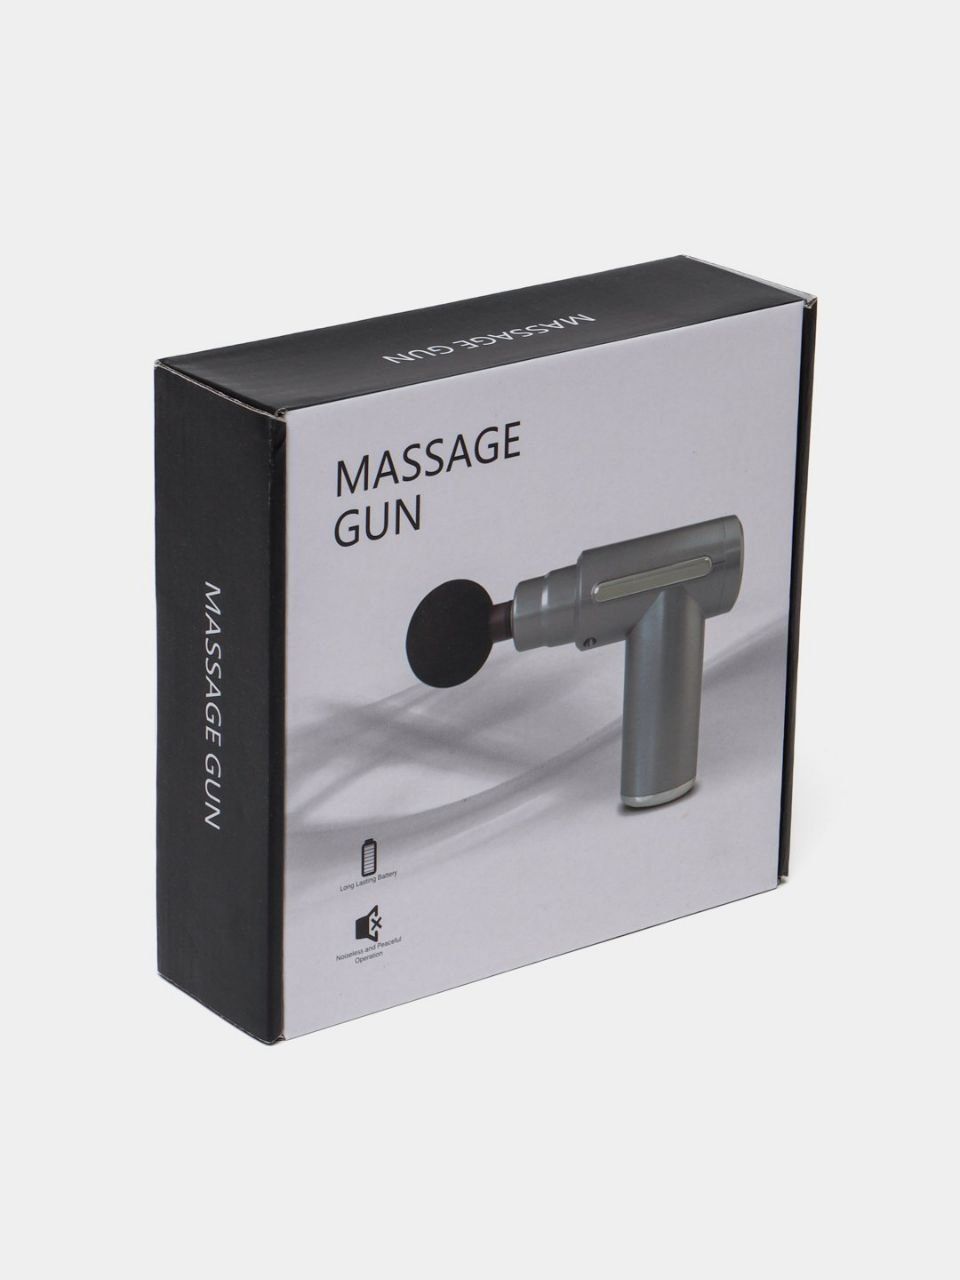 Universal Massage gun aparati siz uchun maxsus